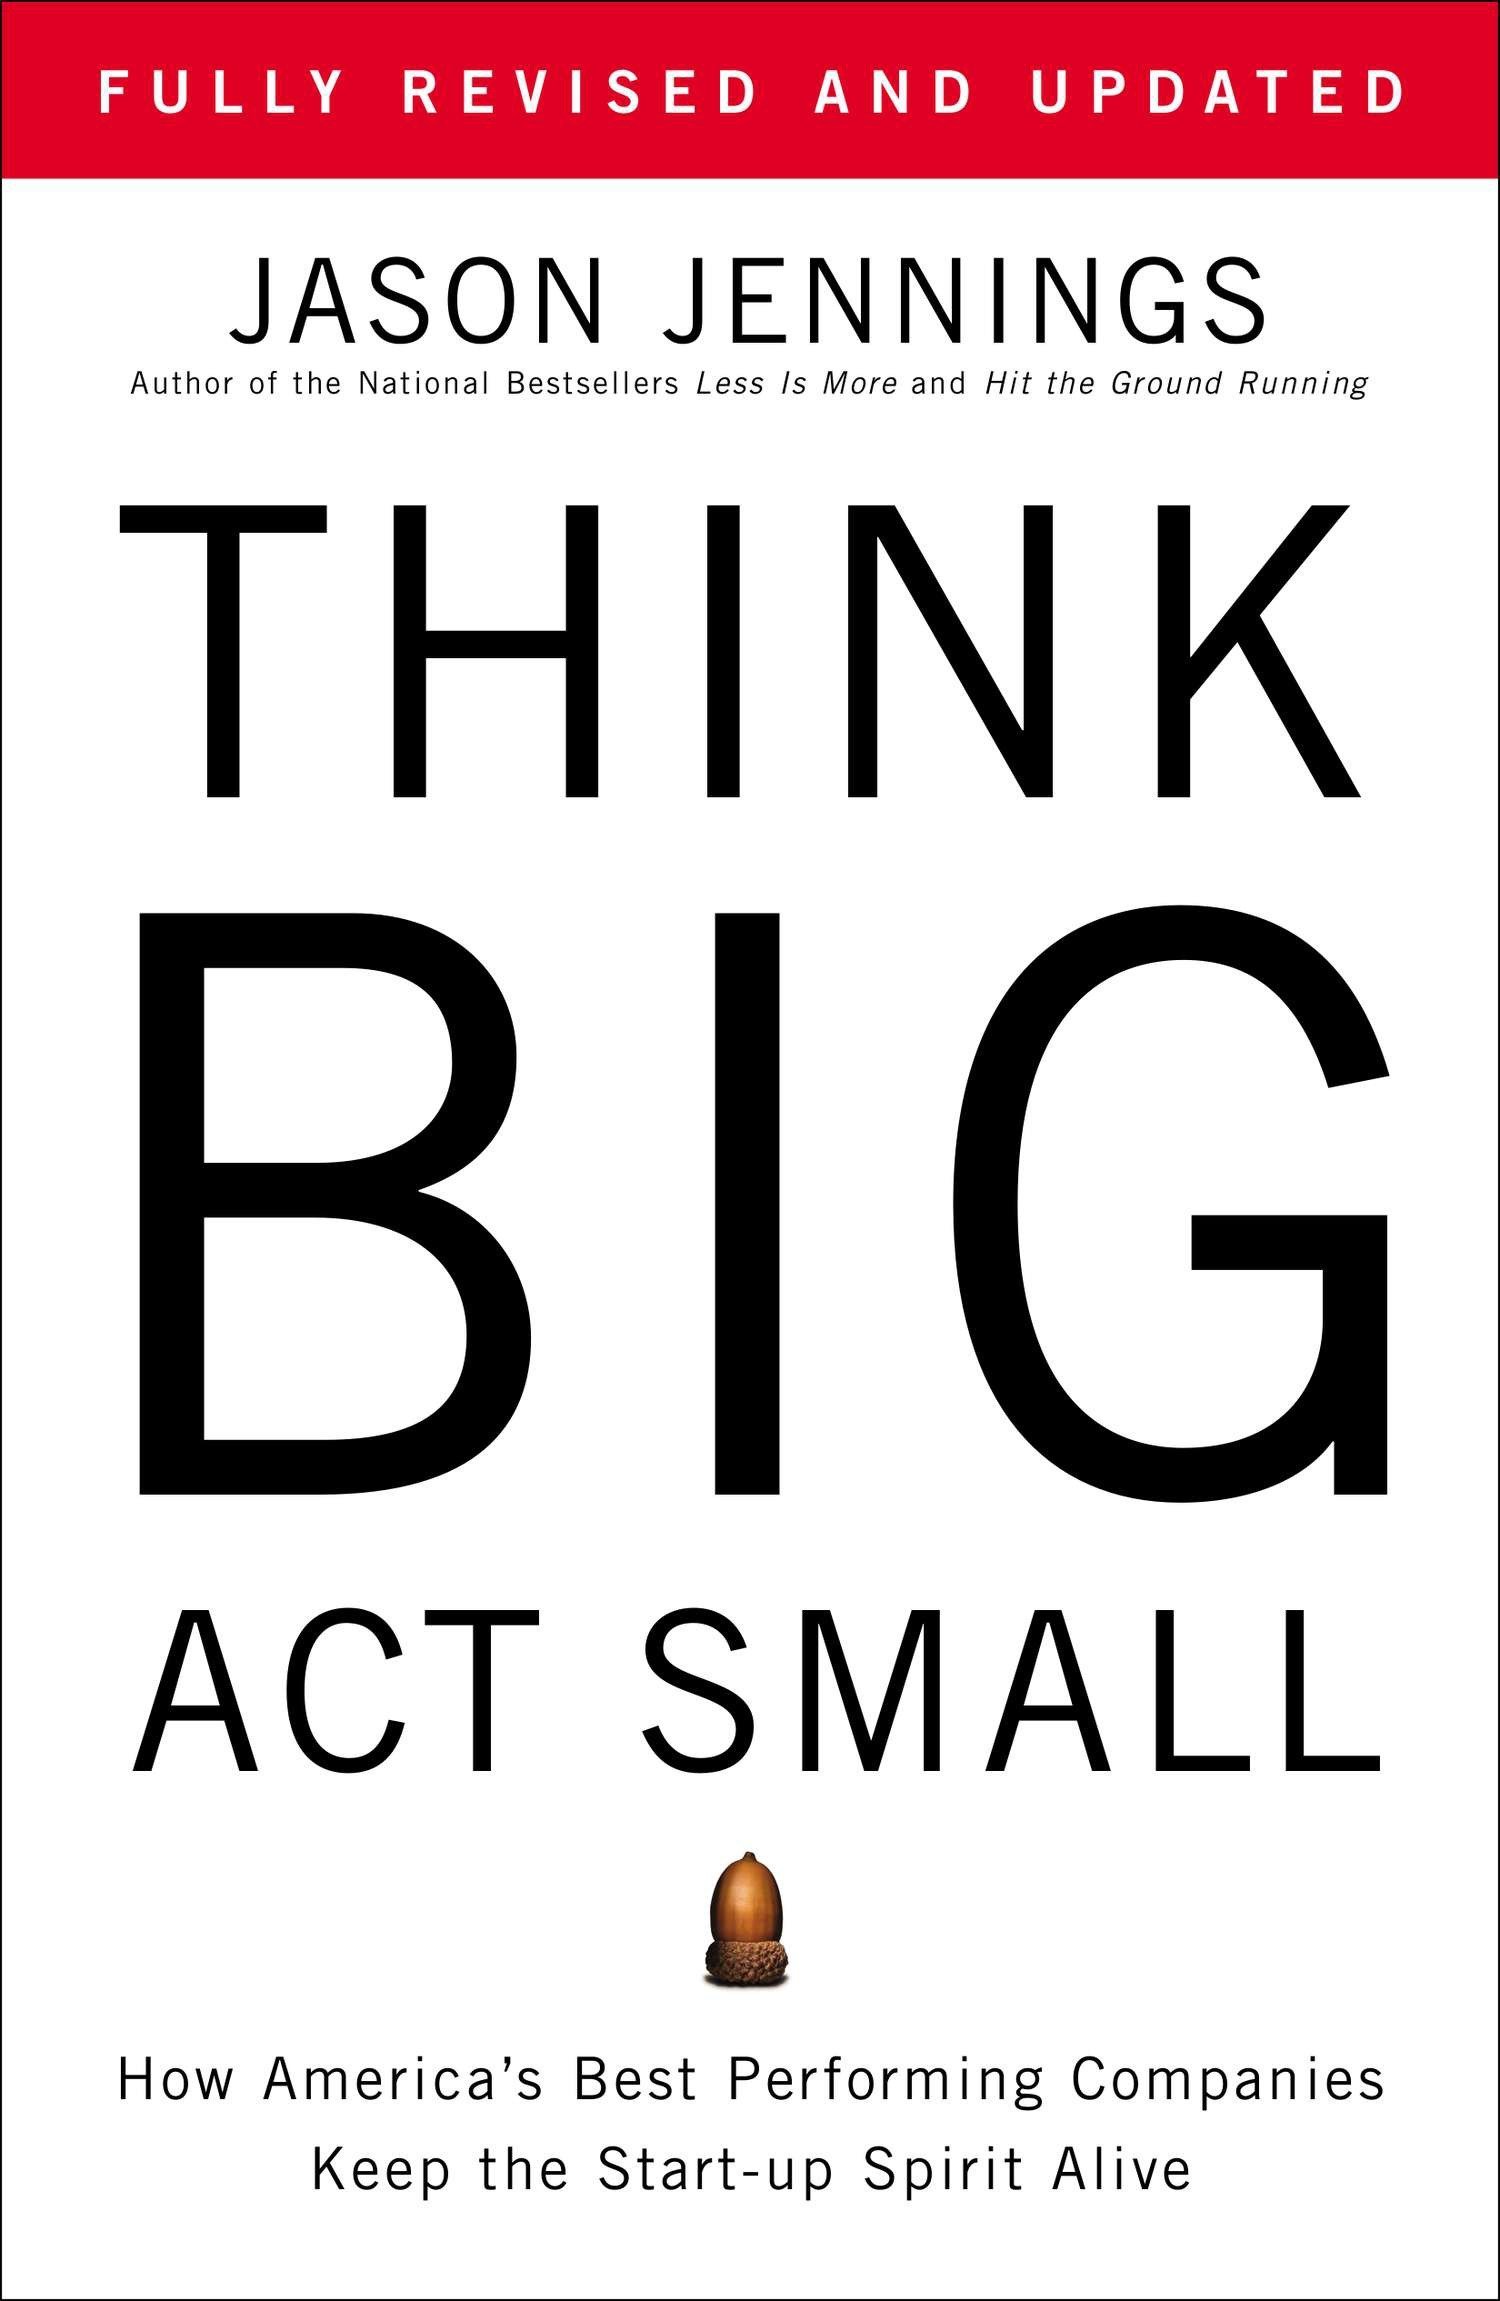 Think big, act smail - Jason Jennings